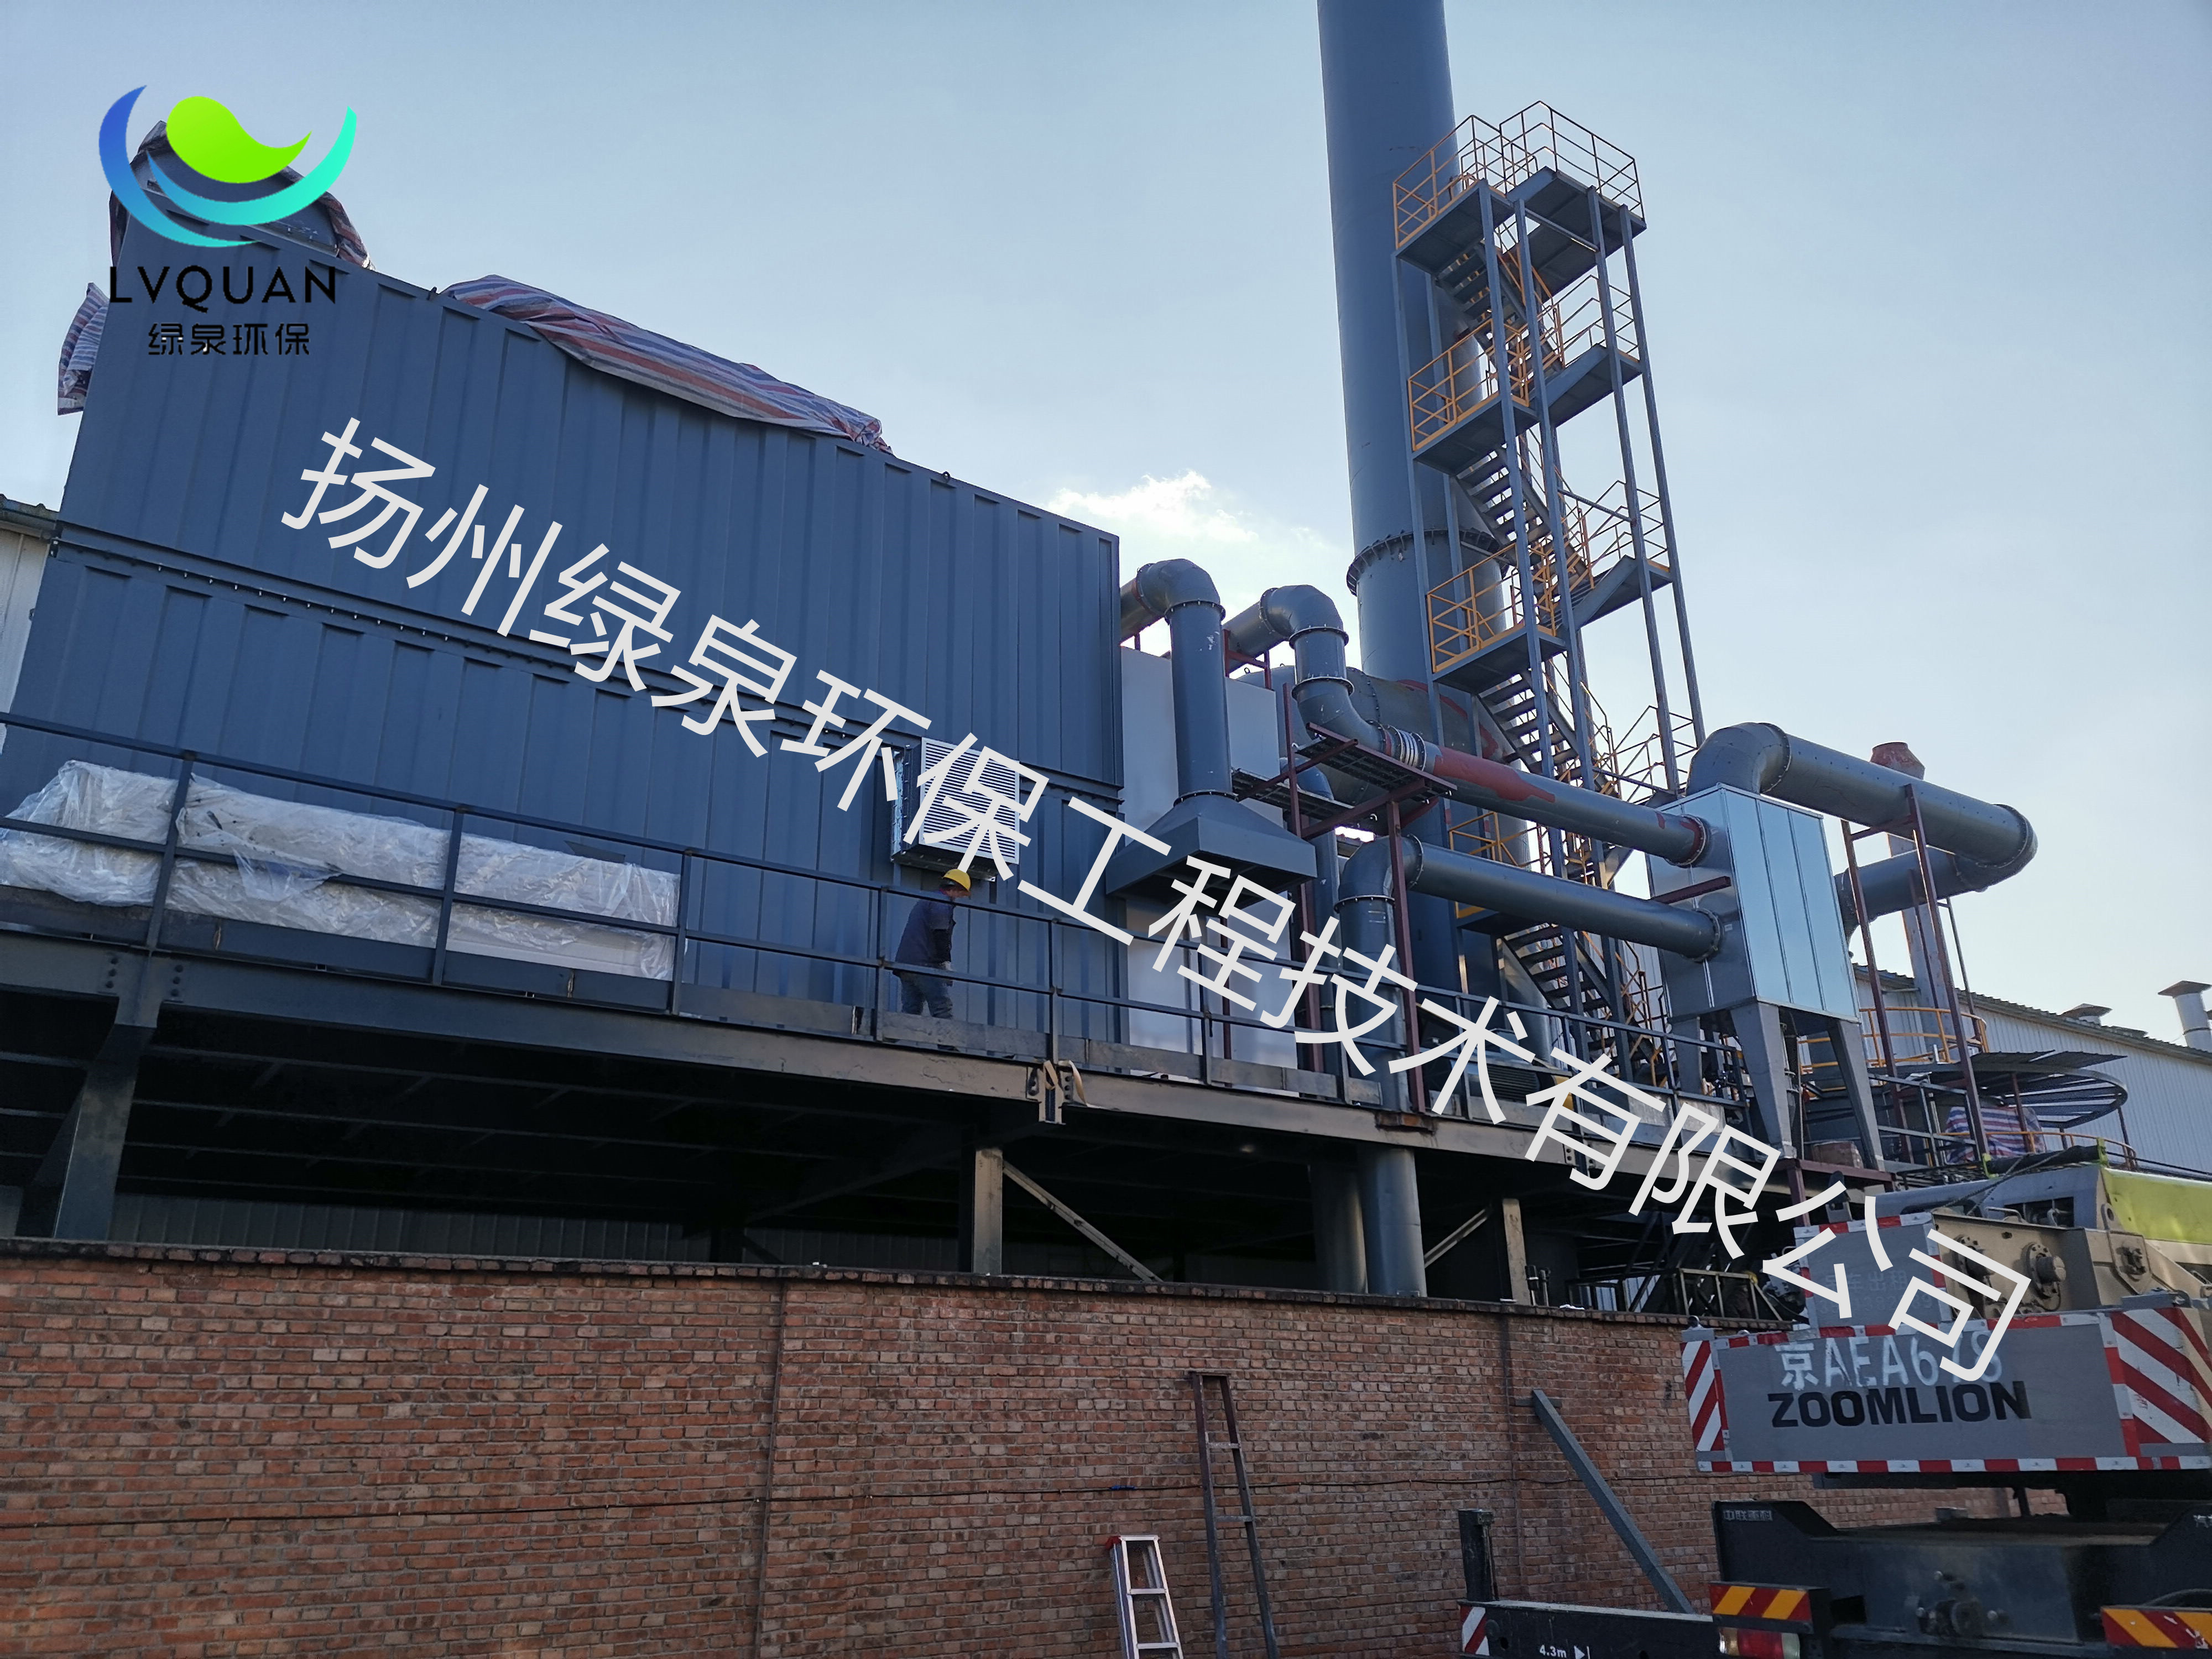 北京中卓VOC-ADW-1700型沸石转轮+RRTO蓄热焚烧设备及附属设施安装现场